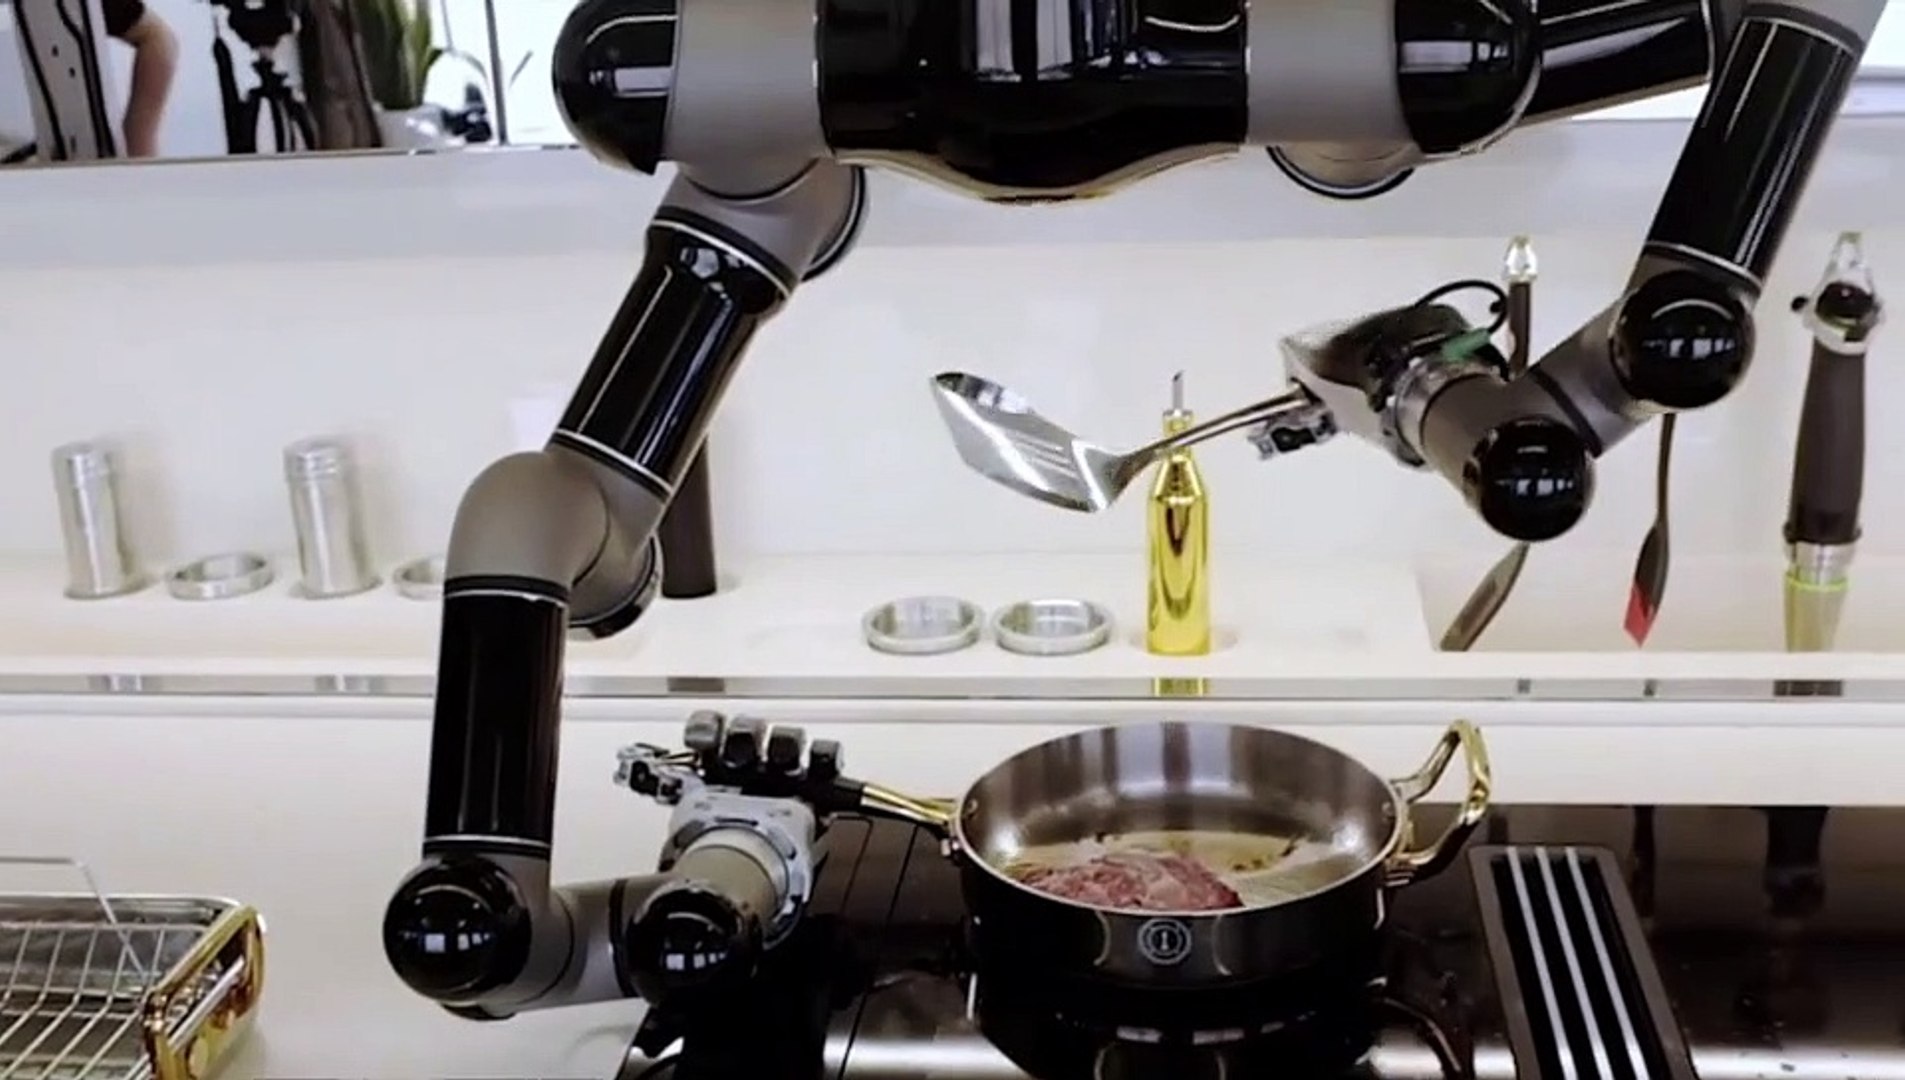 Tres robots cocineros que apoyan al chef con brazos robóticos